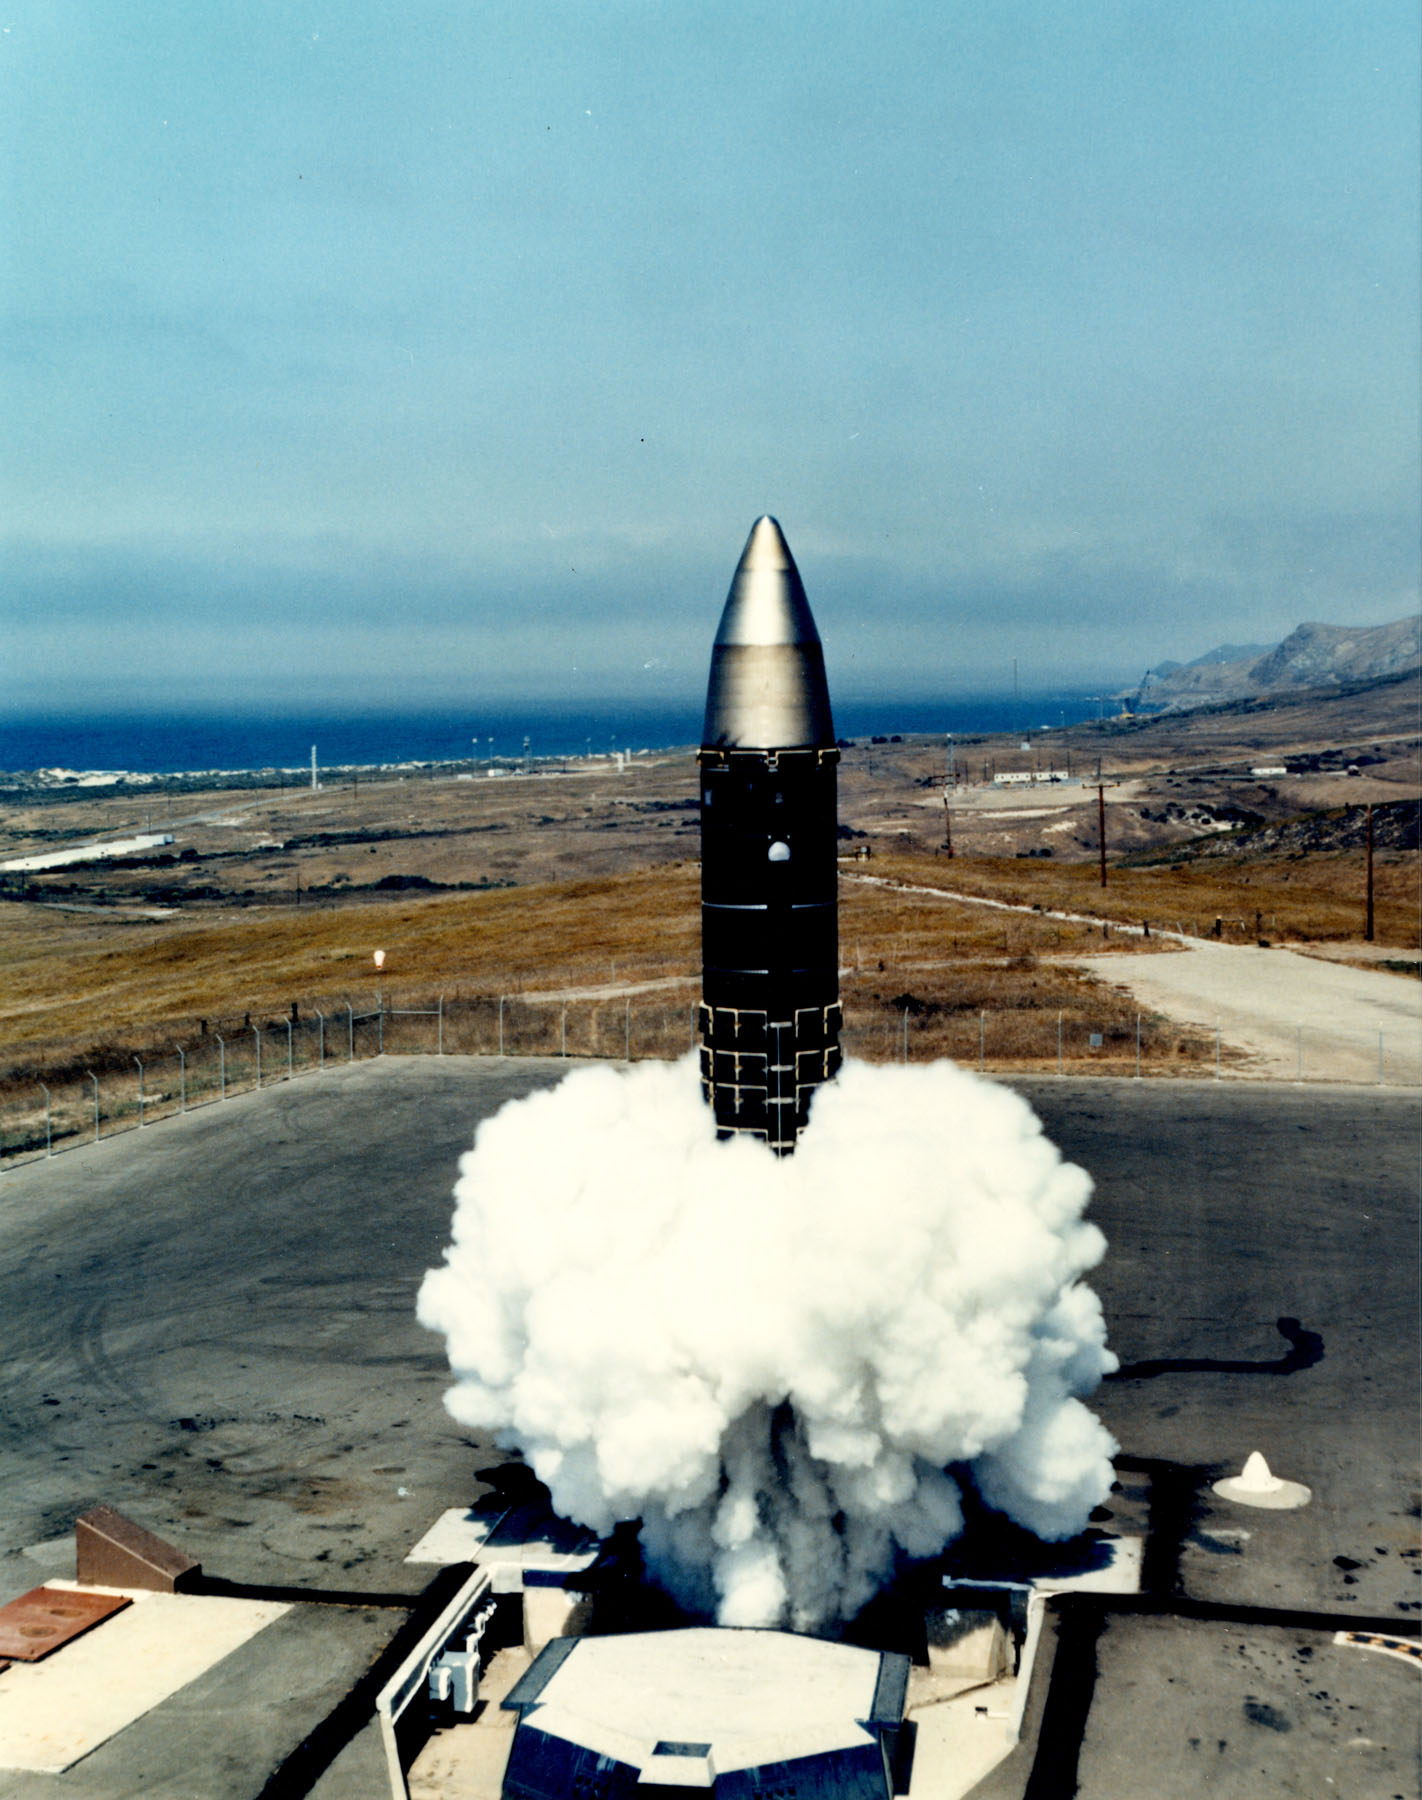 Ядерная ракета америки. LGM-118a Peacekeeper – MX. LGM-118 баллистическая ракета. LGM-118a «Пискипер». RS-28 Sarmat.